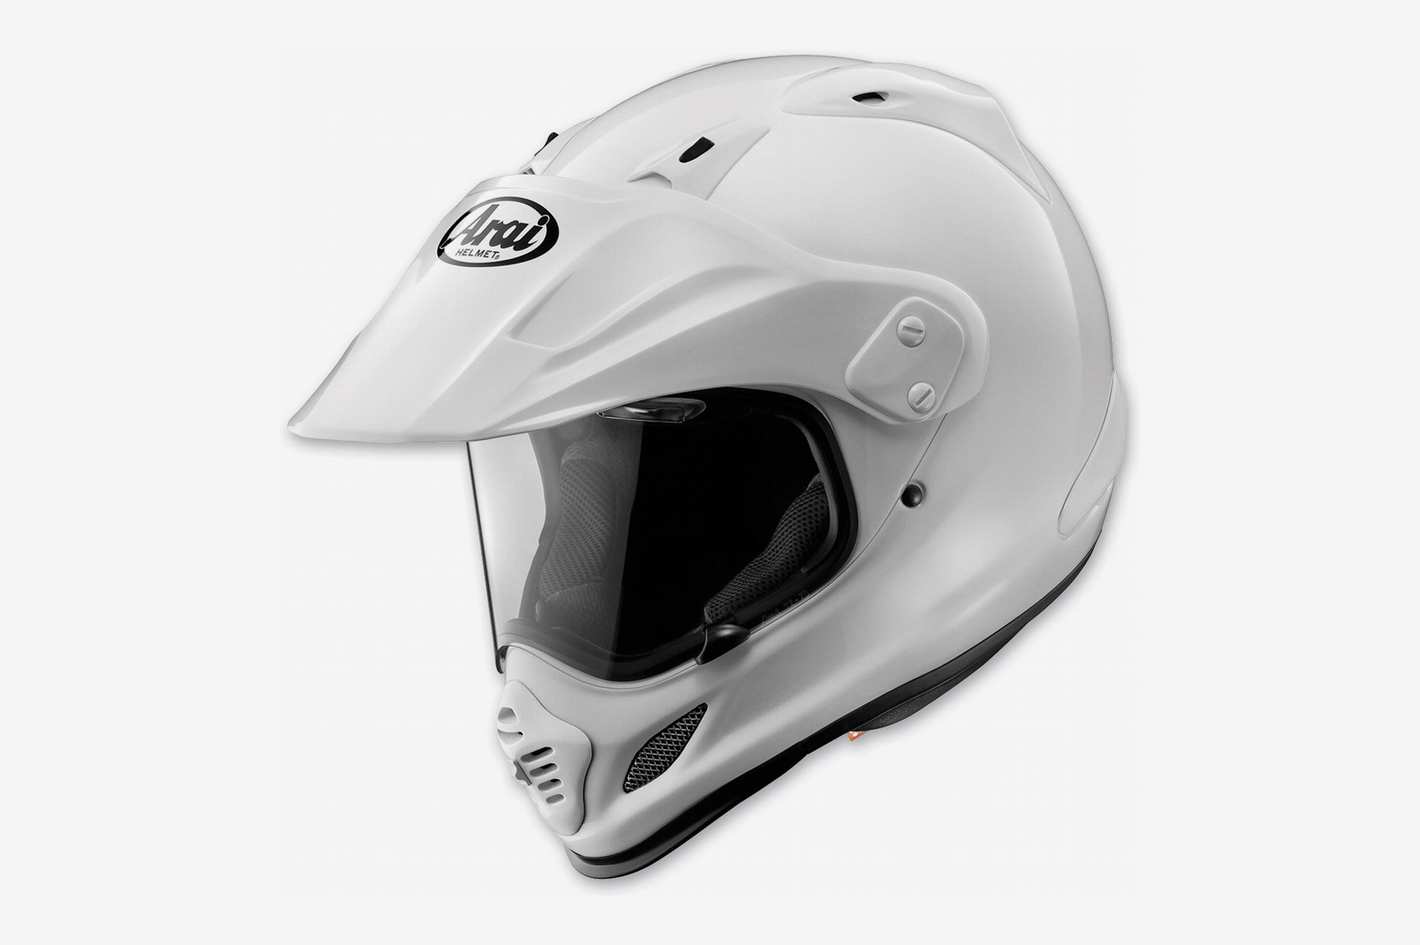 The Best Motorcycle Helmets 2019